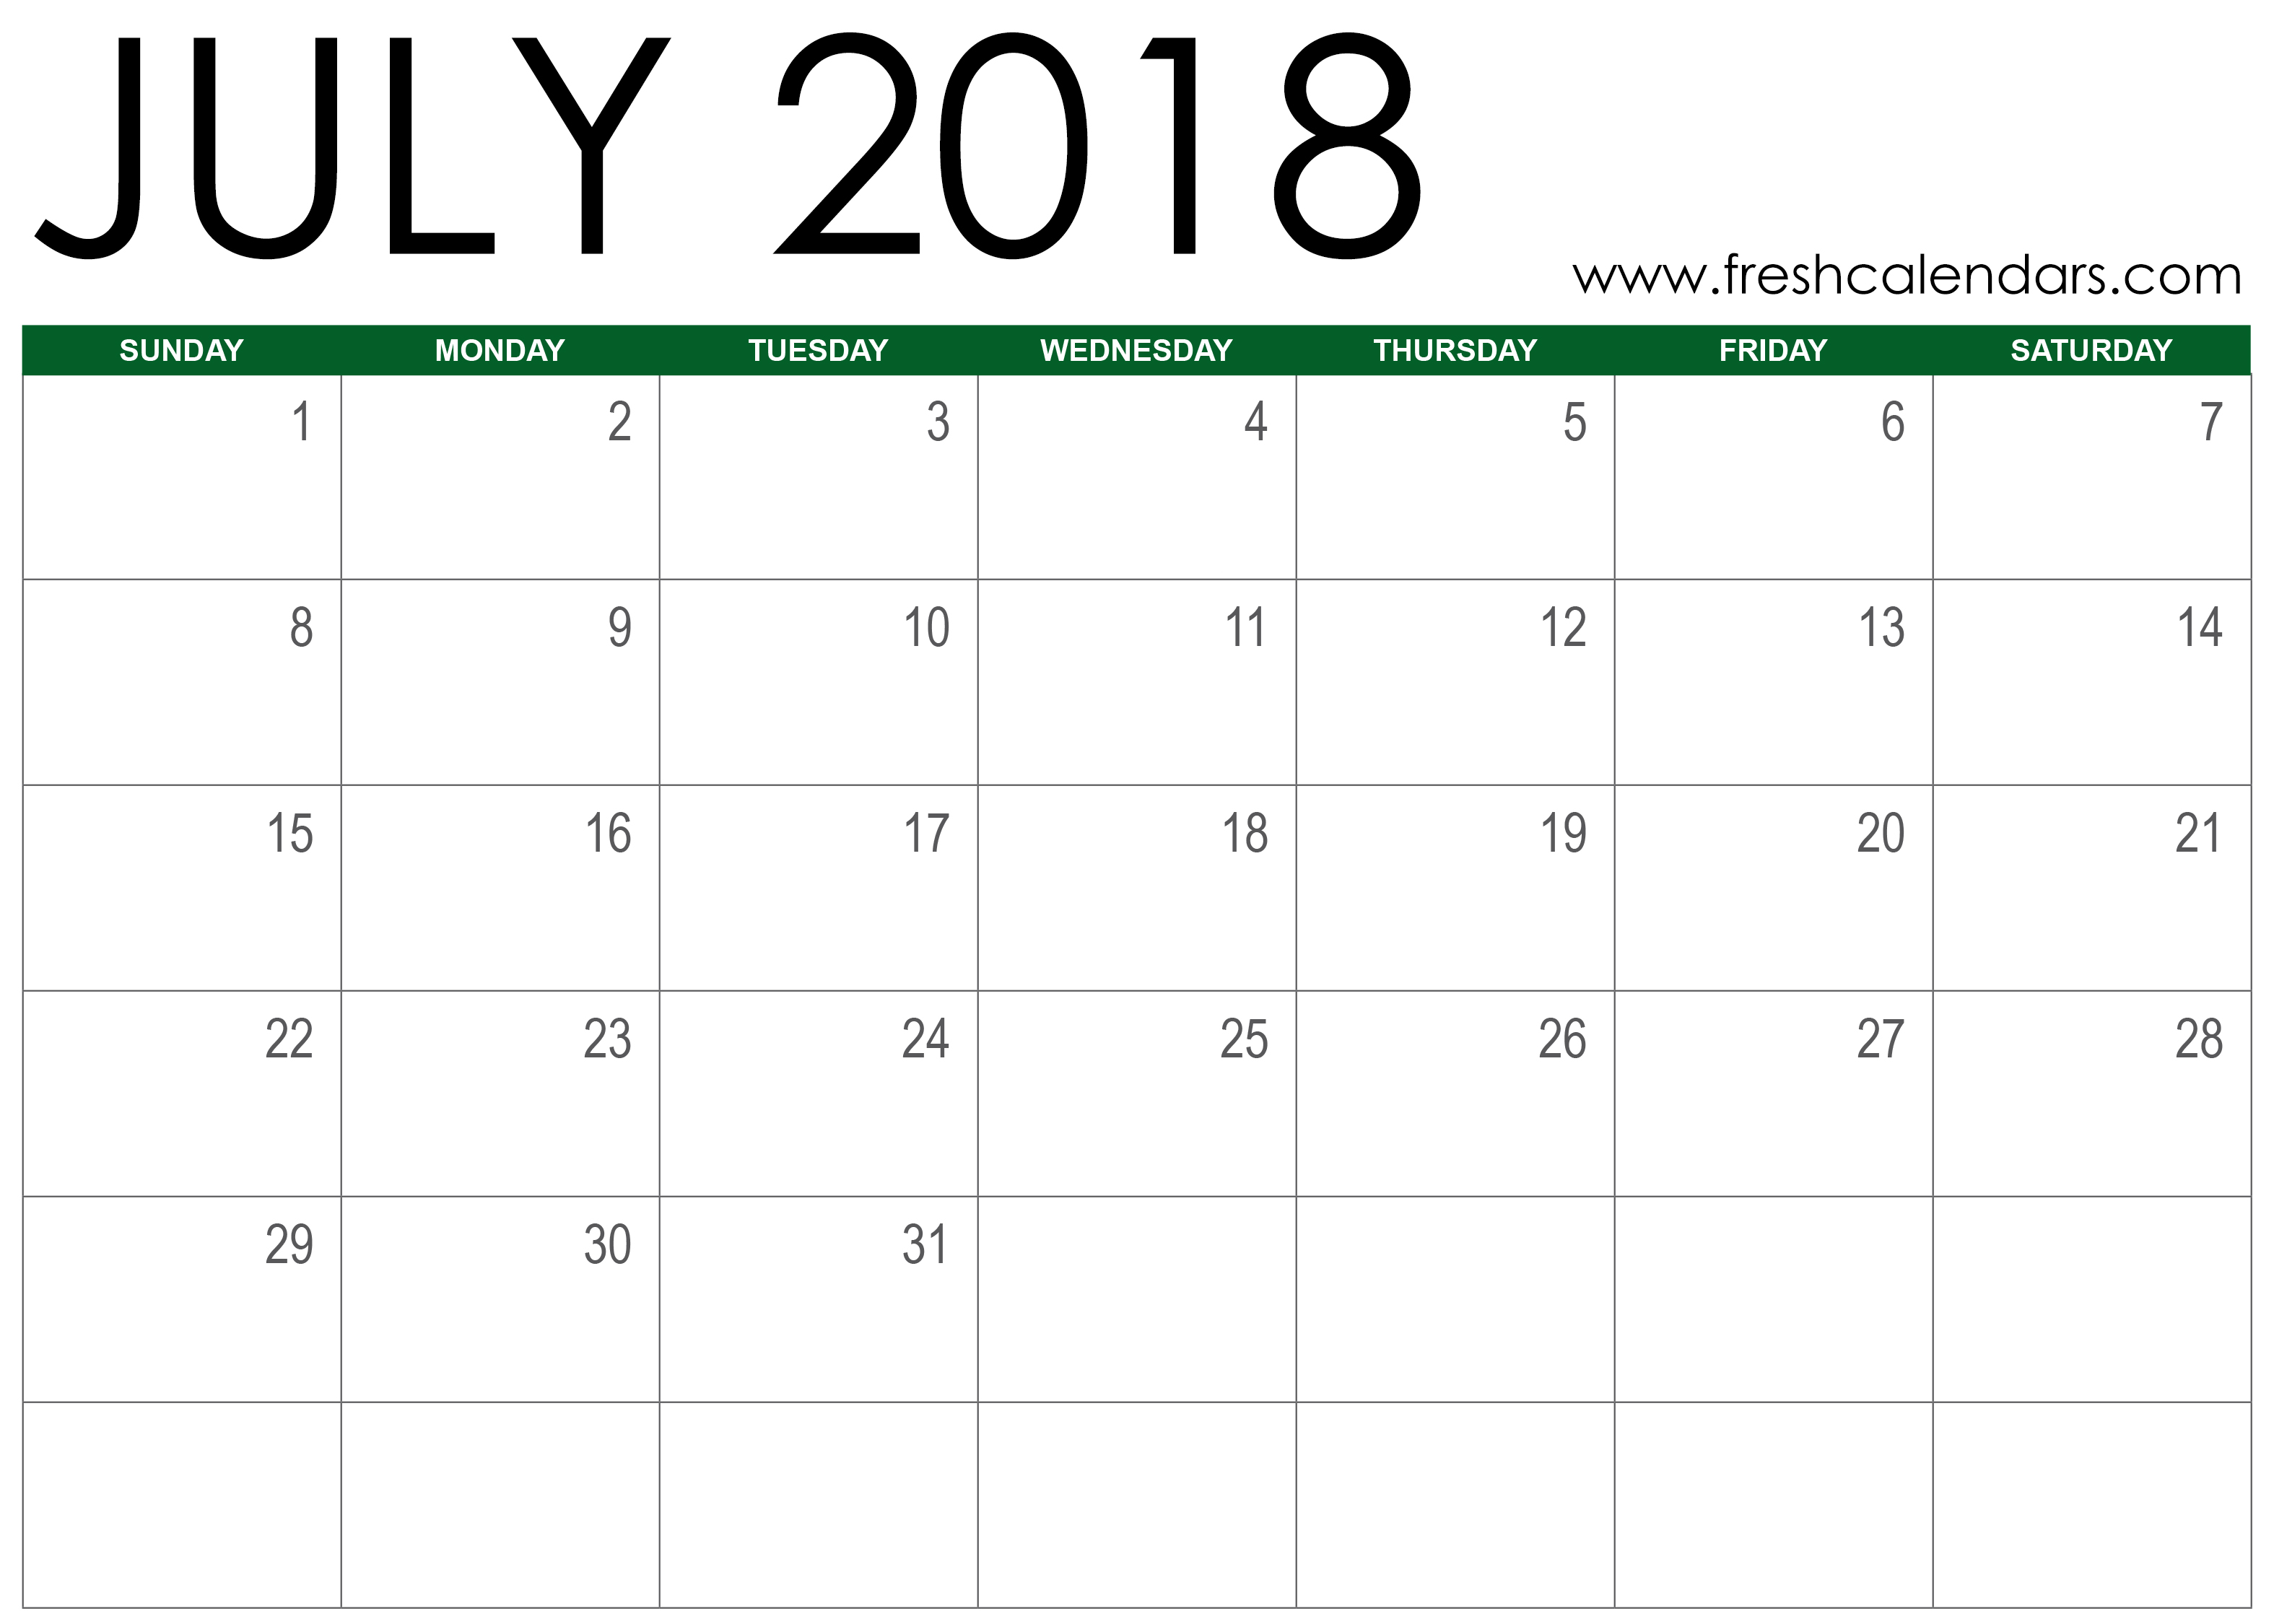 July 2018 Calendar Template July 2018 Calendar Template July 2018 Calendar Template